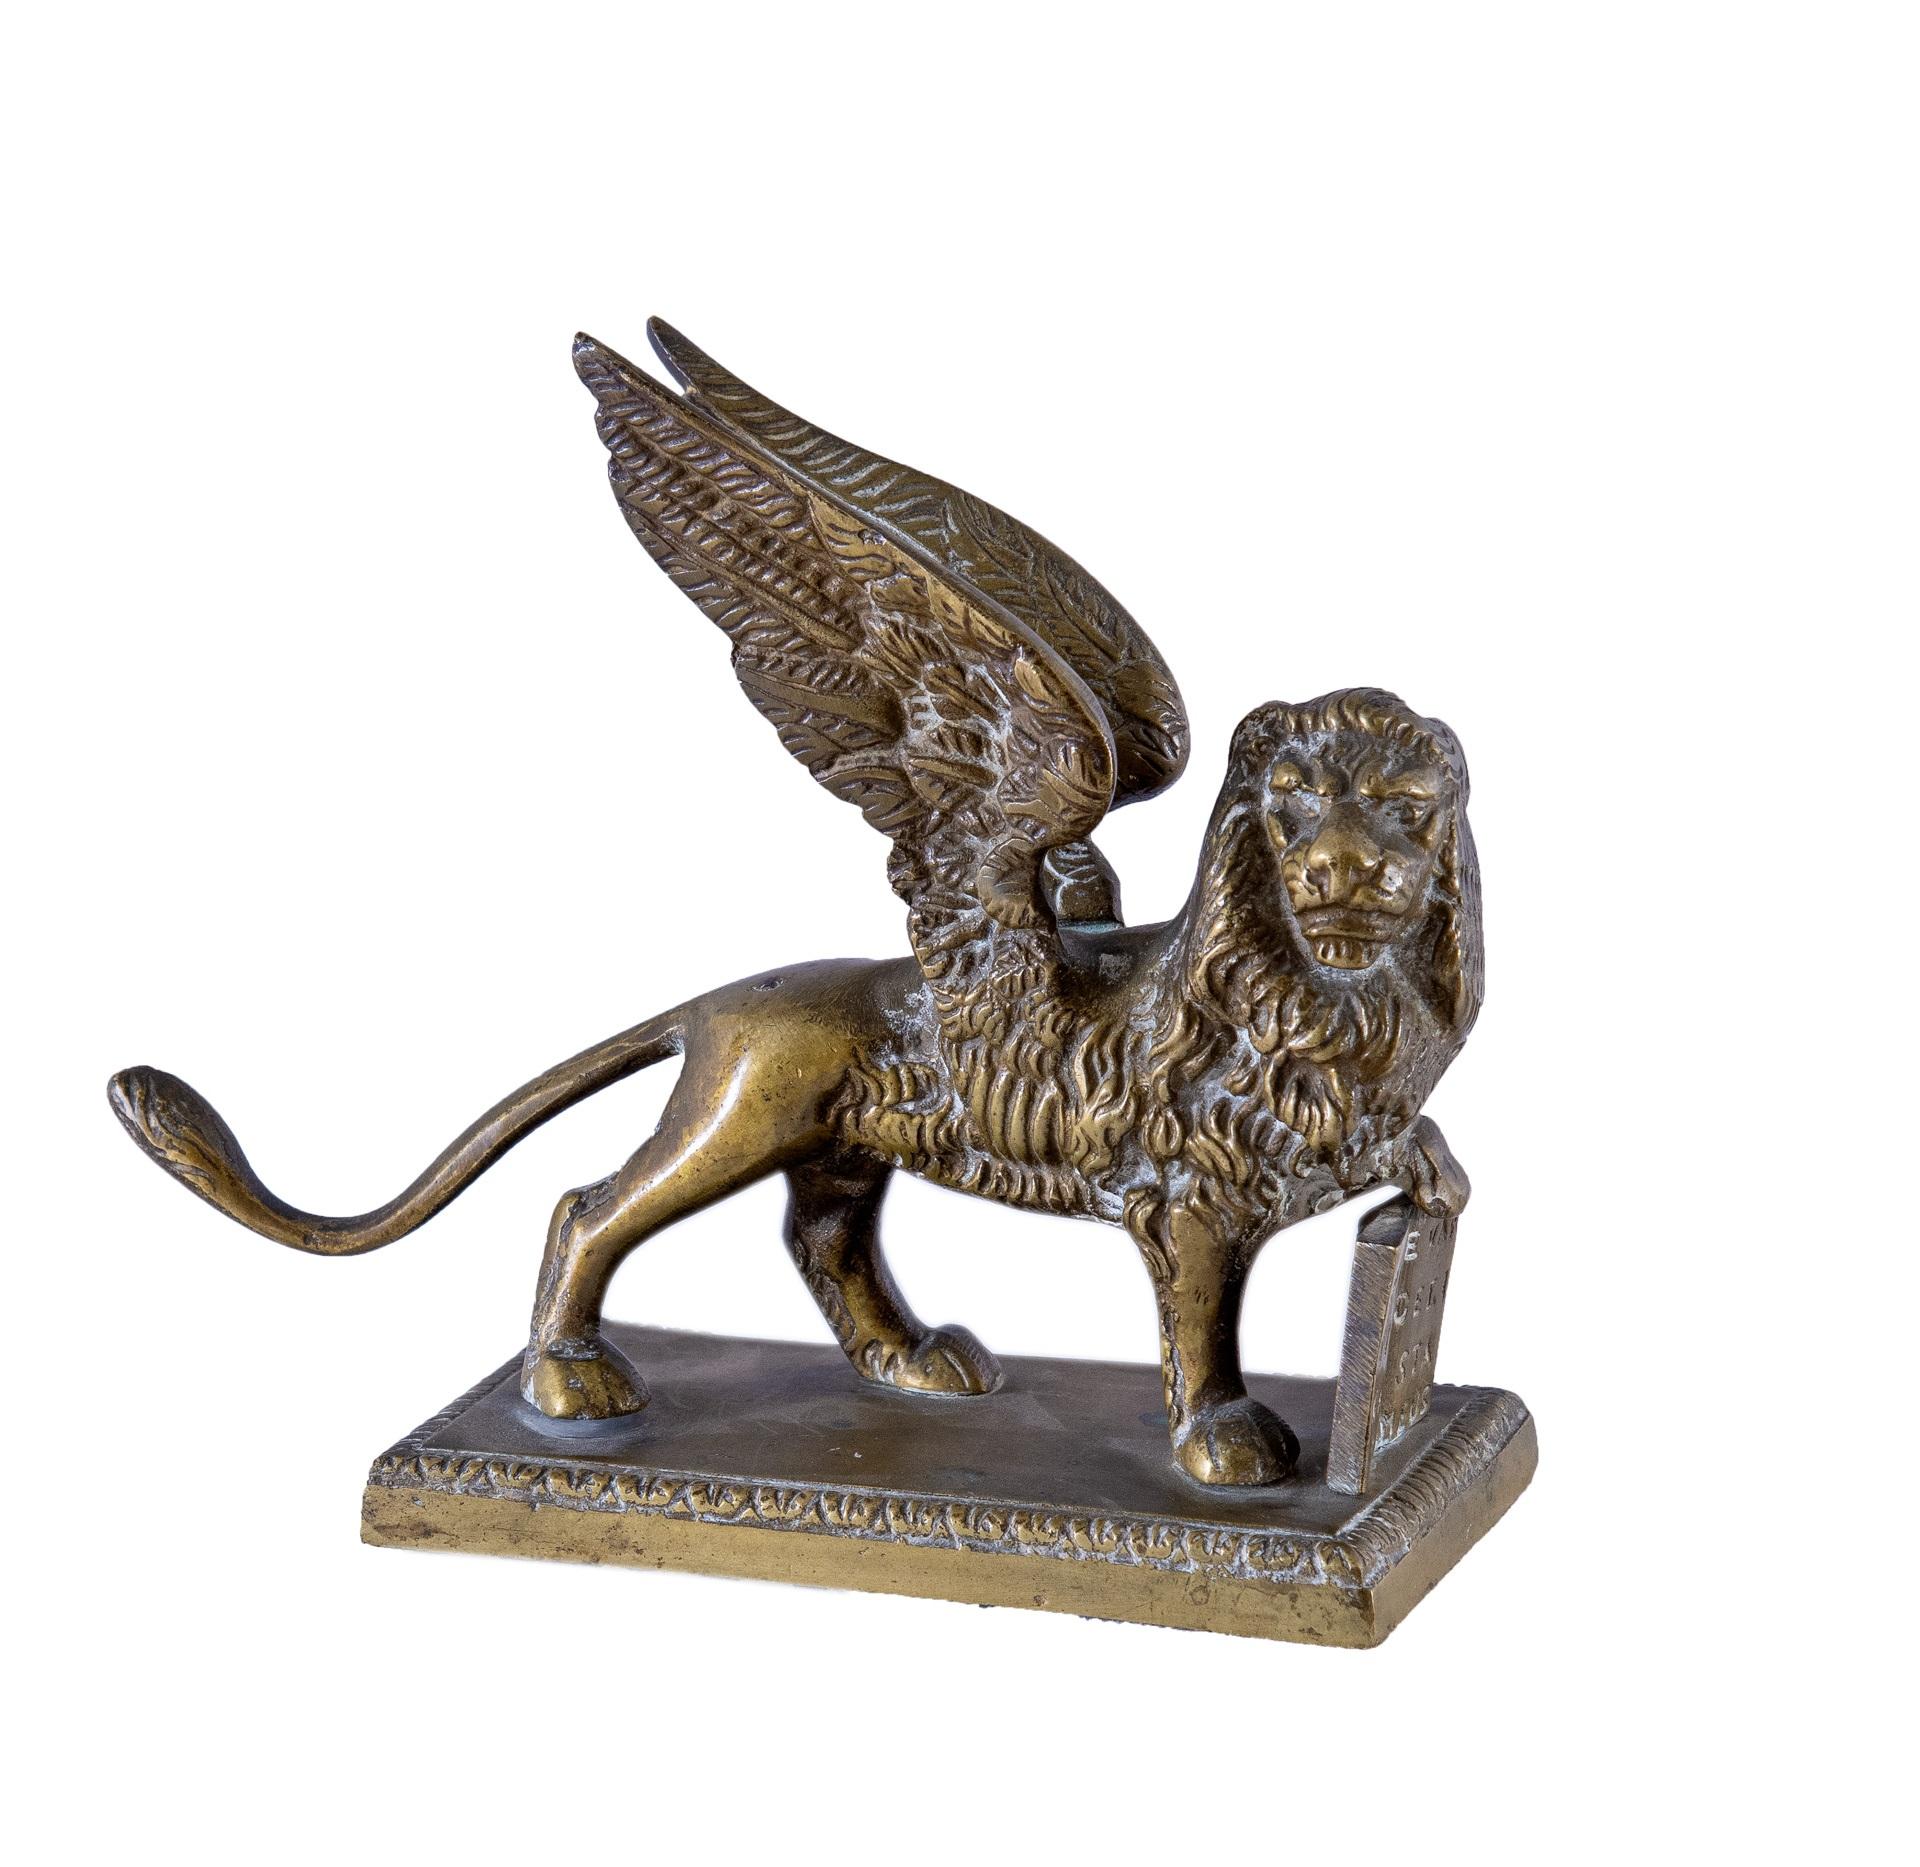 Unknown Abstract Sculpture - 19-20th century Italian bronze sculpture - St Mark Lion - Venice Napoleon III